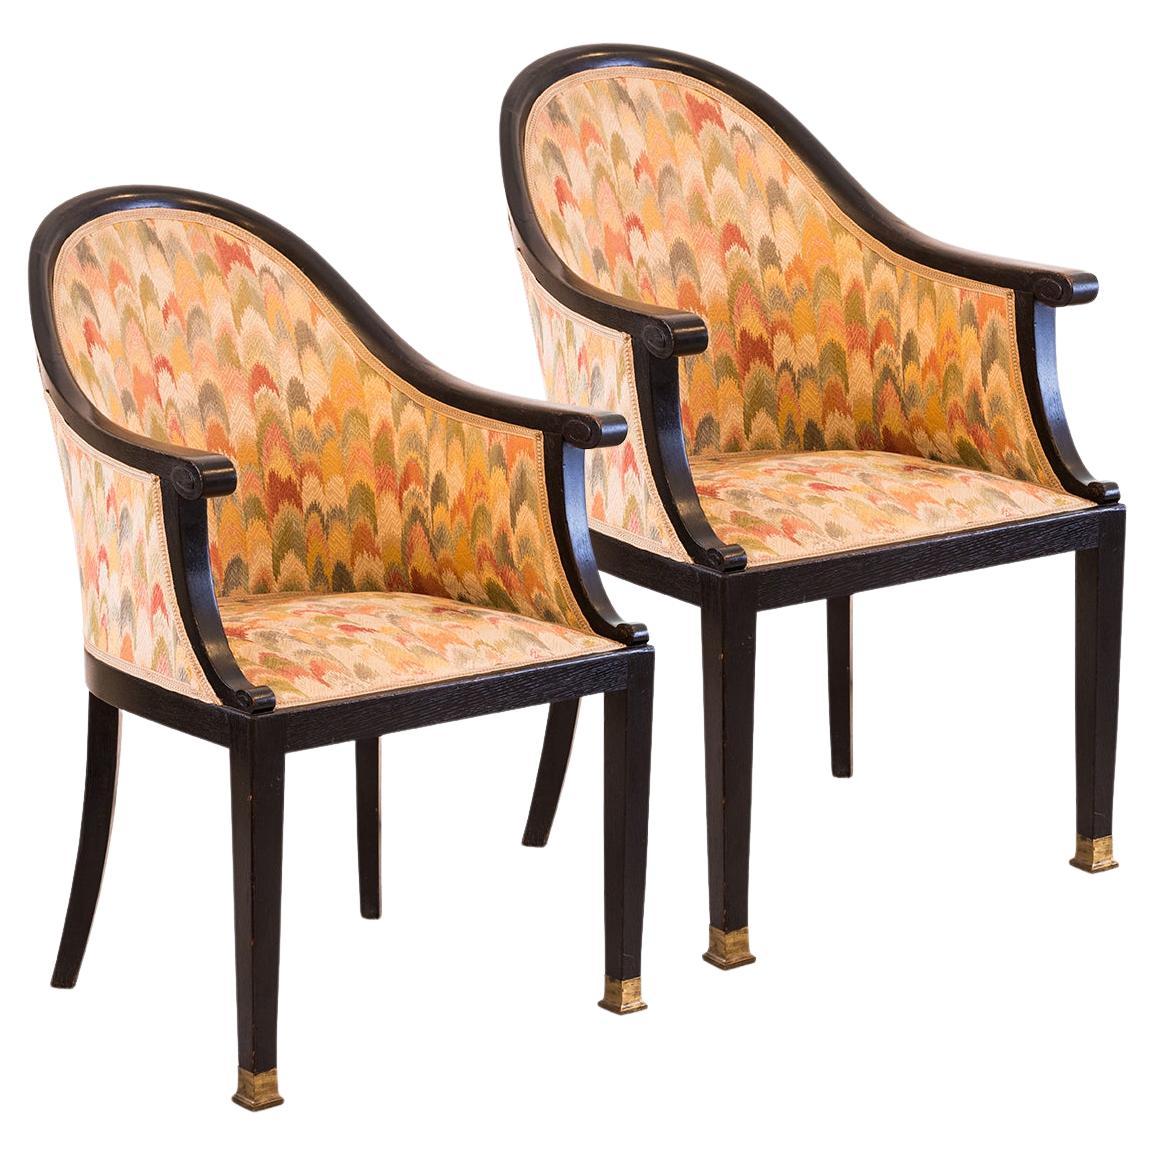 Josef Hoffmann / Otto Prutscher Attr. Chairs, Pair of